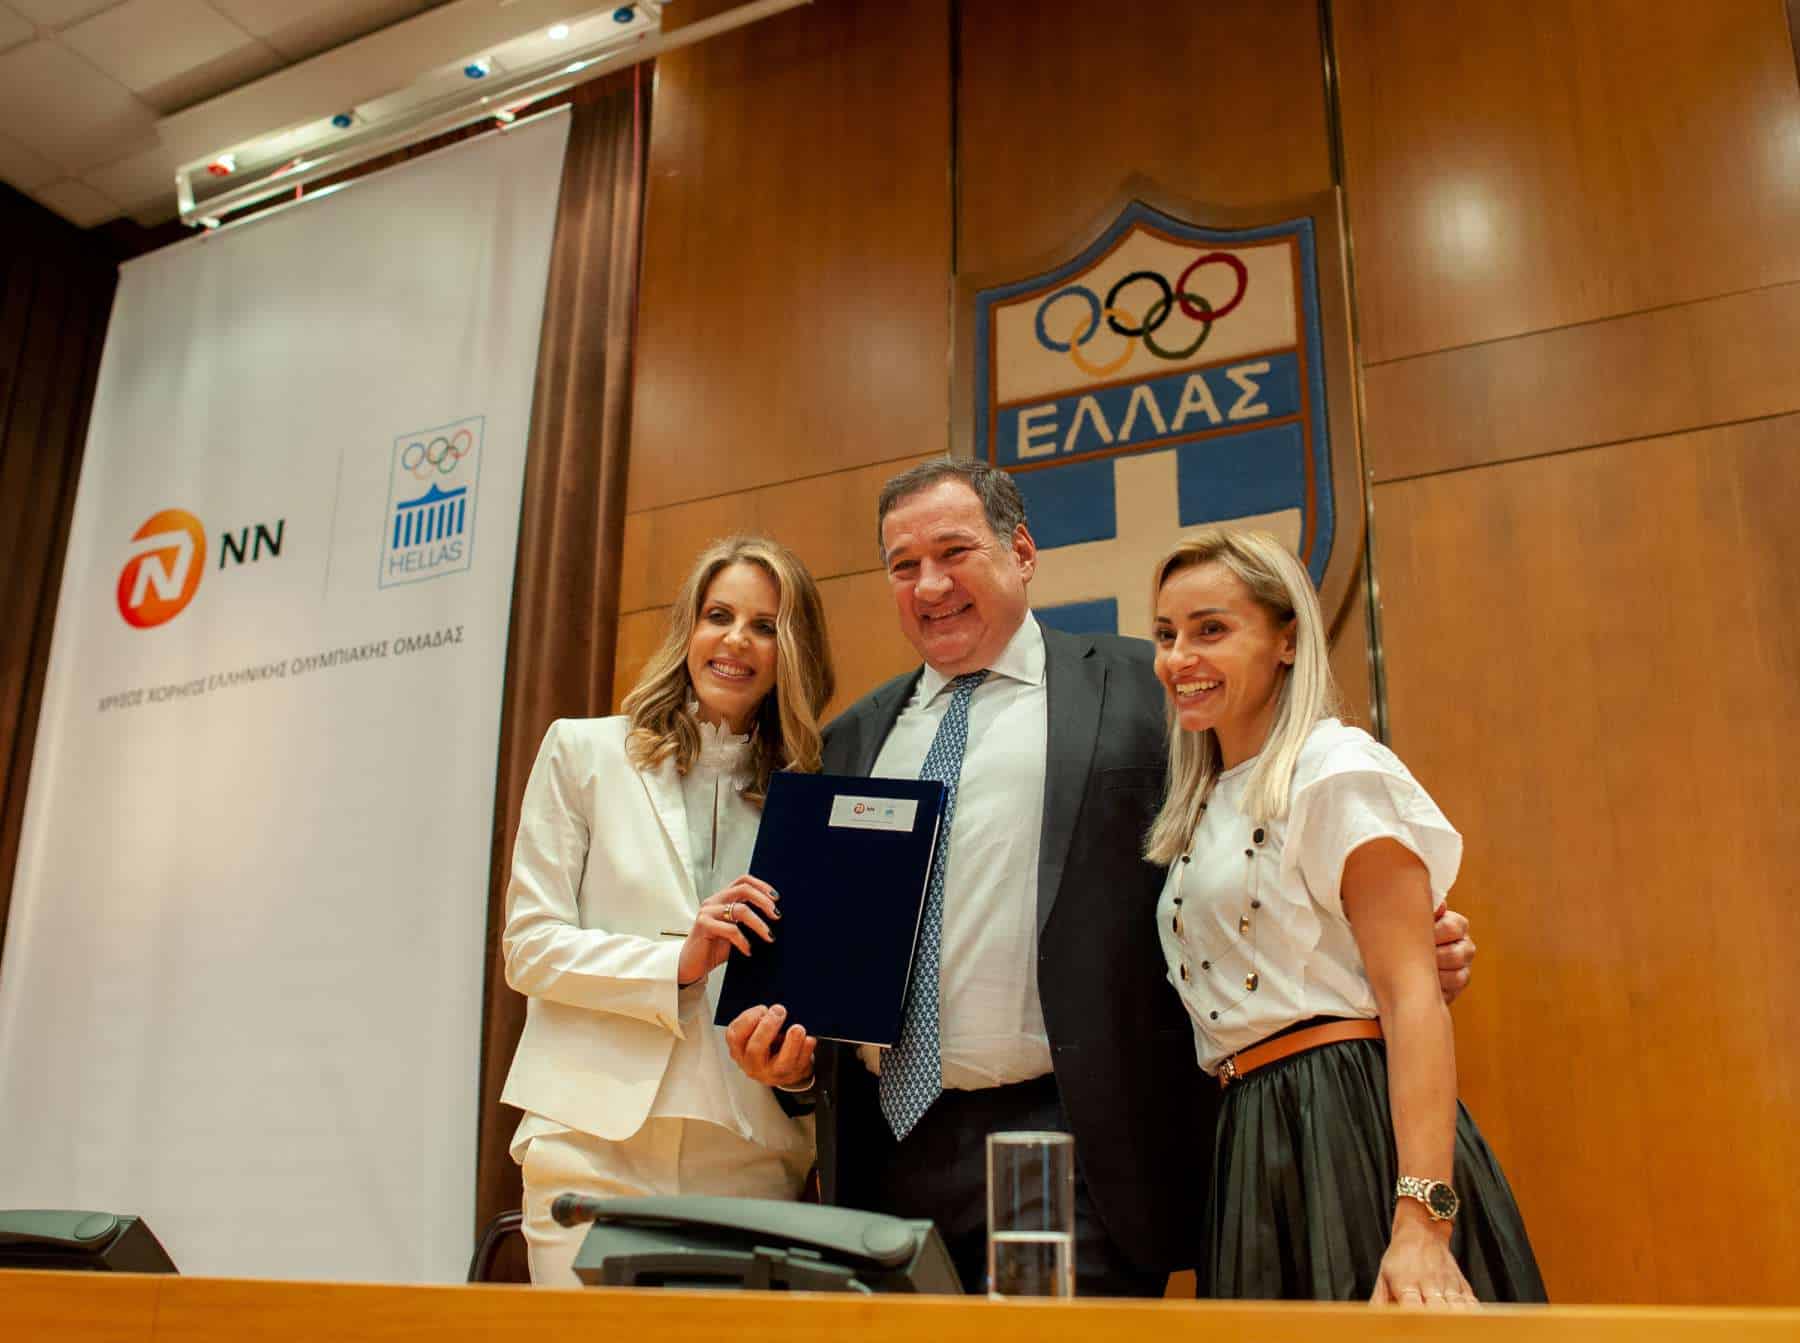 ΝΝ Hellas: Χρυσός Χορηγός της Ελληνικής Ολυμπιακής Ομάδας